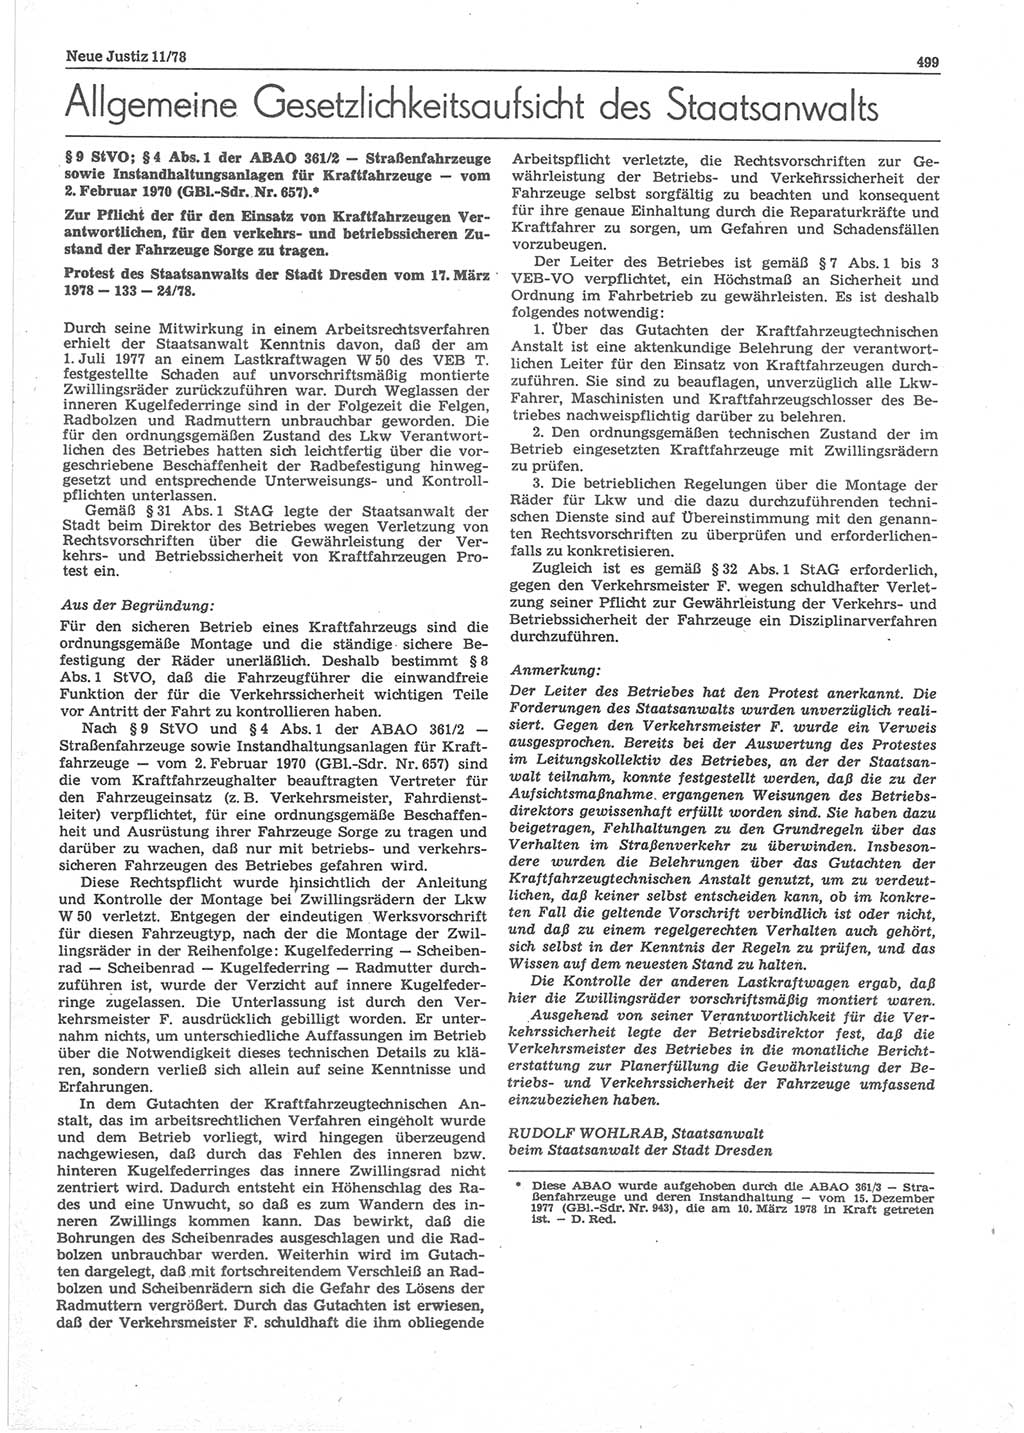 Neue Justiz (NJ), Zeitschrift für sozialistisches Recht und Gesetzlichkeit [Deutsche Demokratische Republik (DDR)], 32. Jahrgang 1978, Seite 499 (NJ DDR 1978, S. 499)